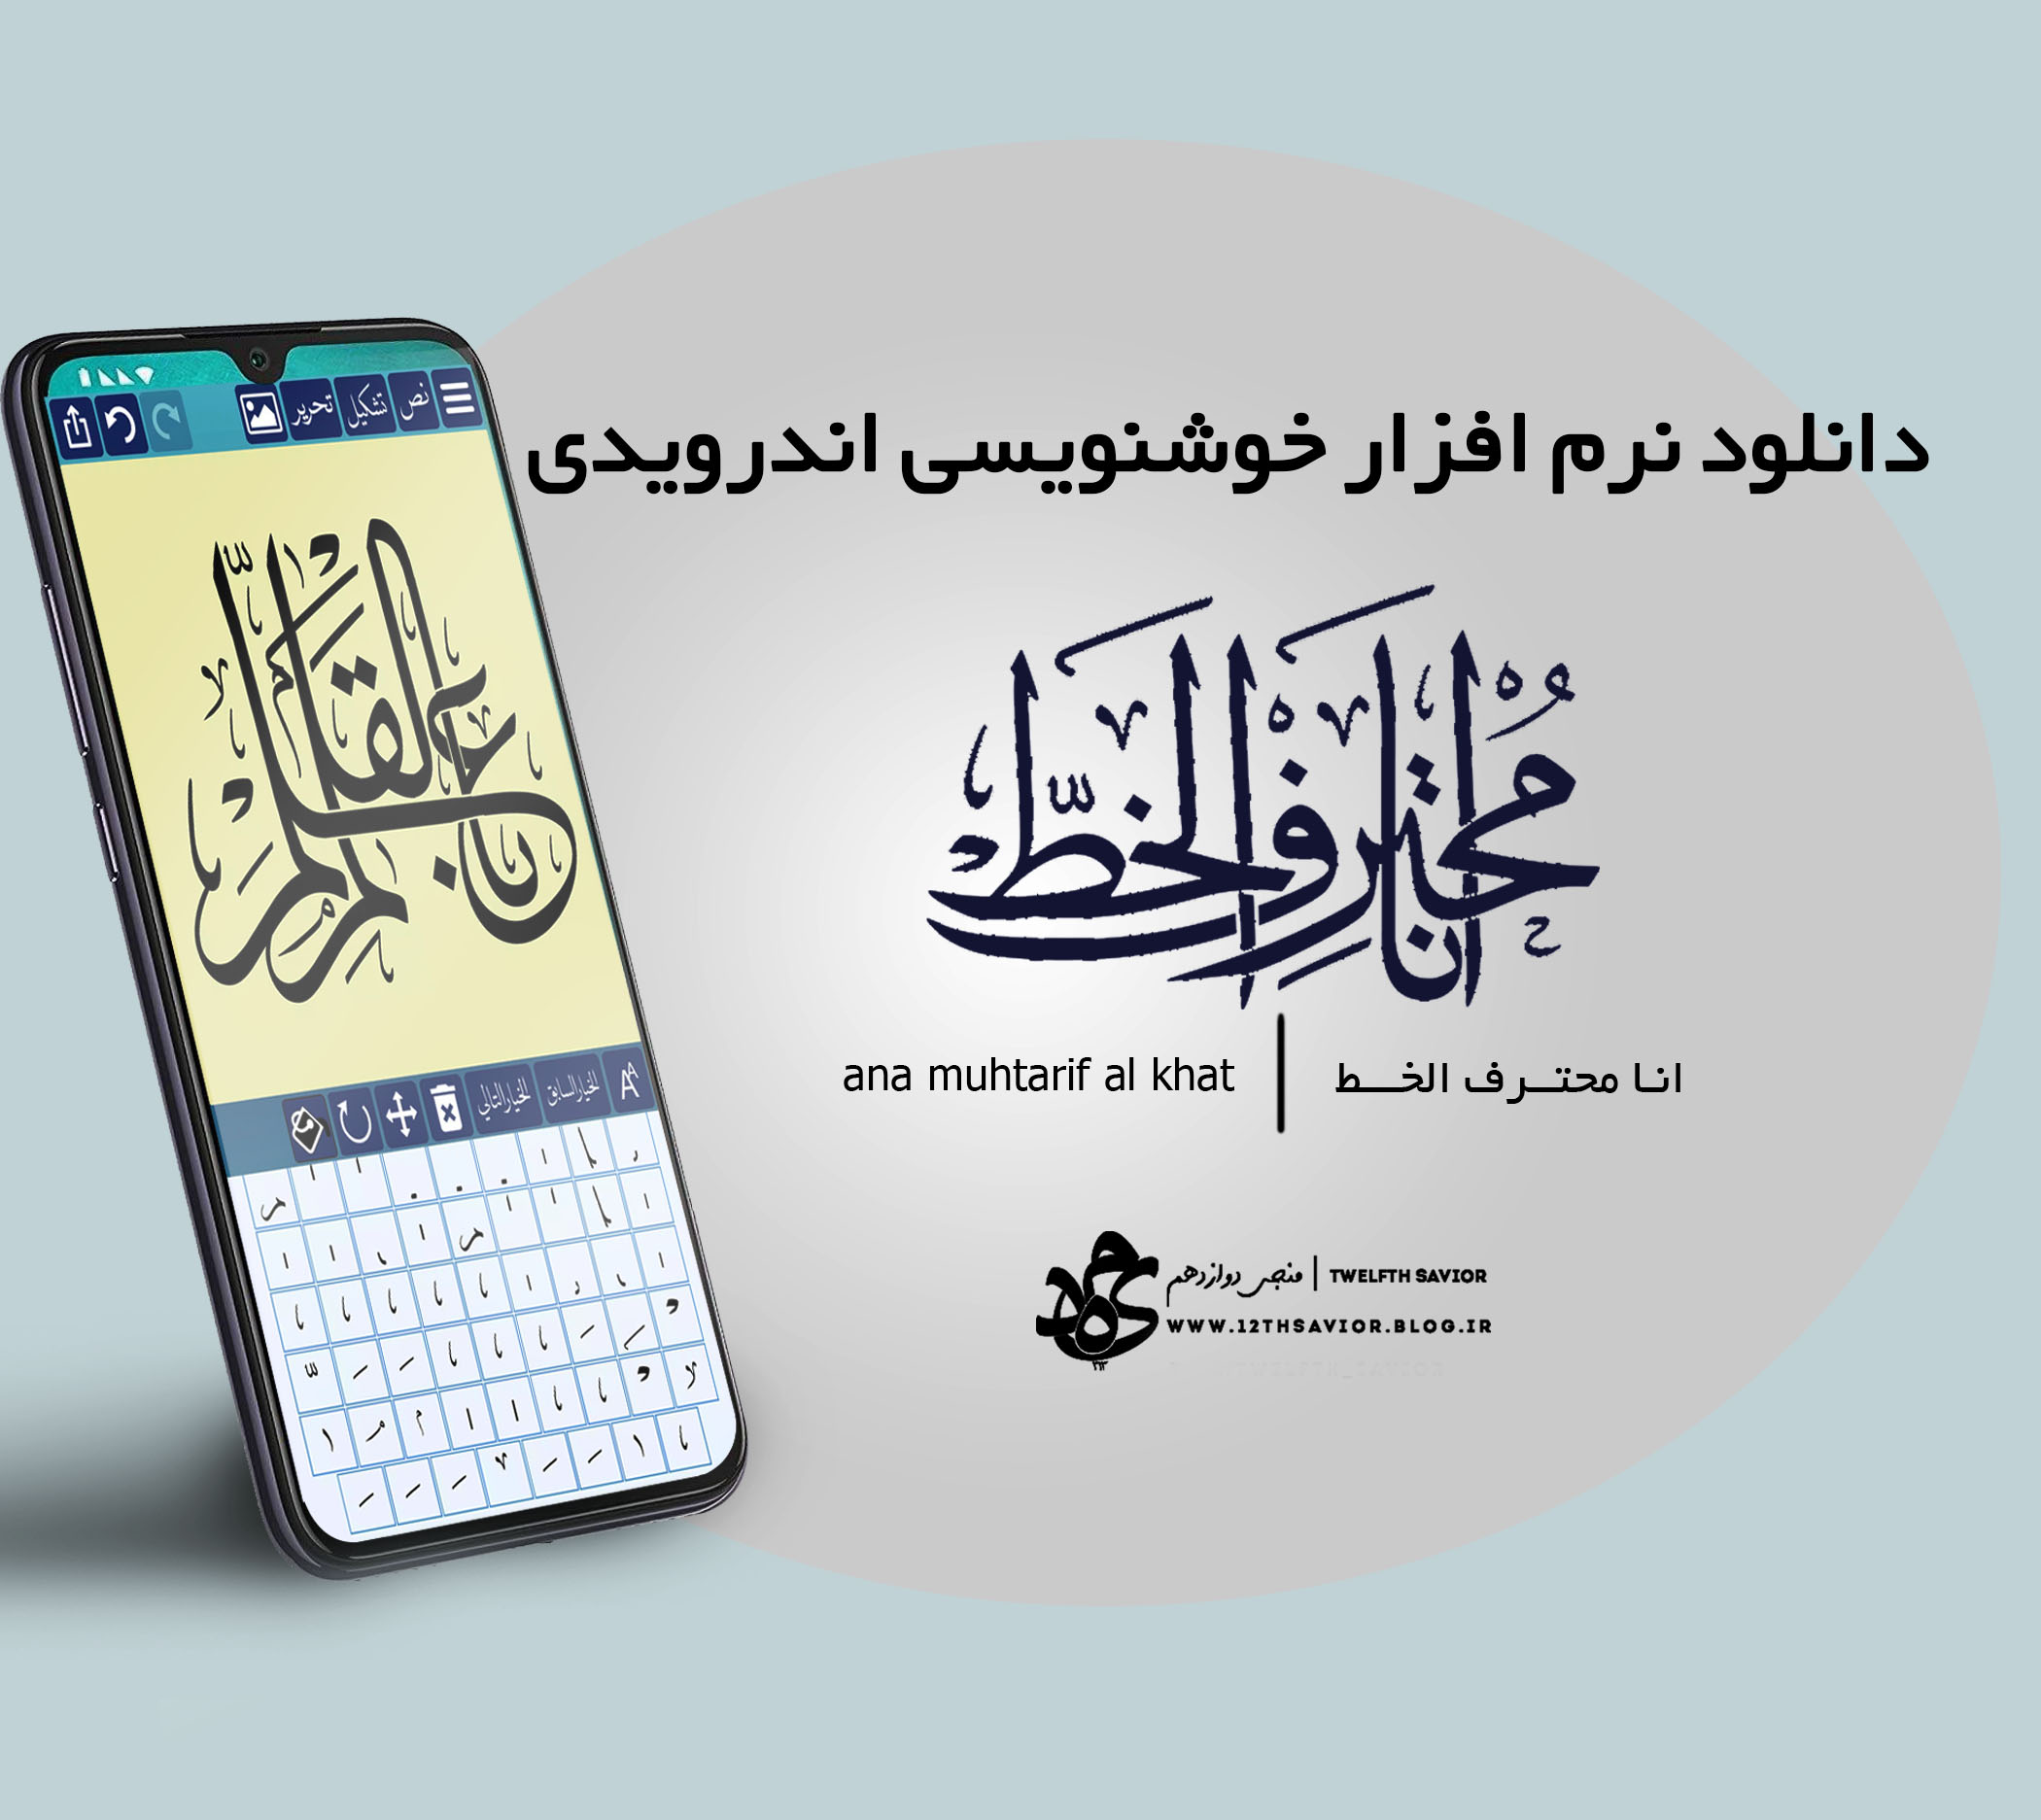 دانلود نرم افزار خوشنویسی ana muhtarif al khat (نسخه مود)